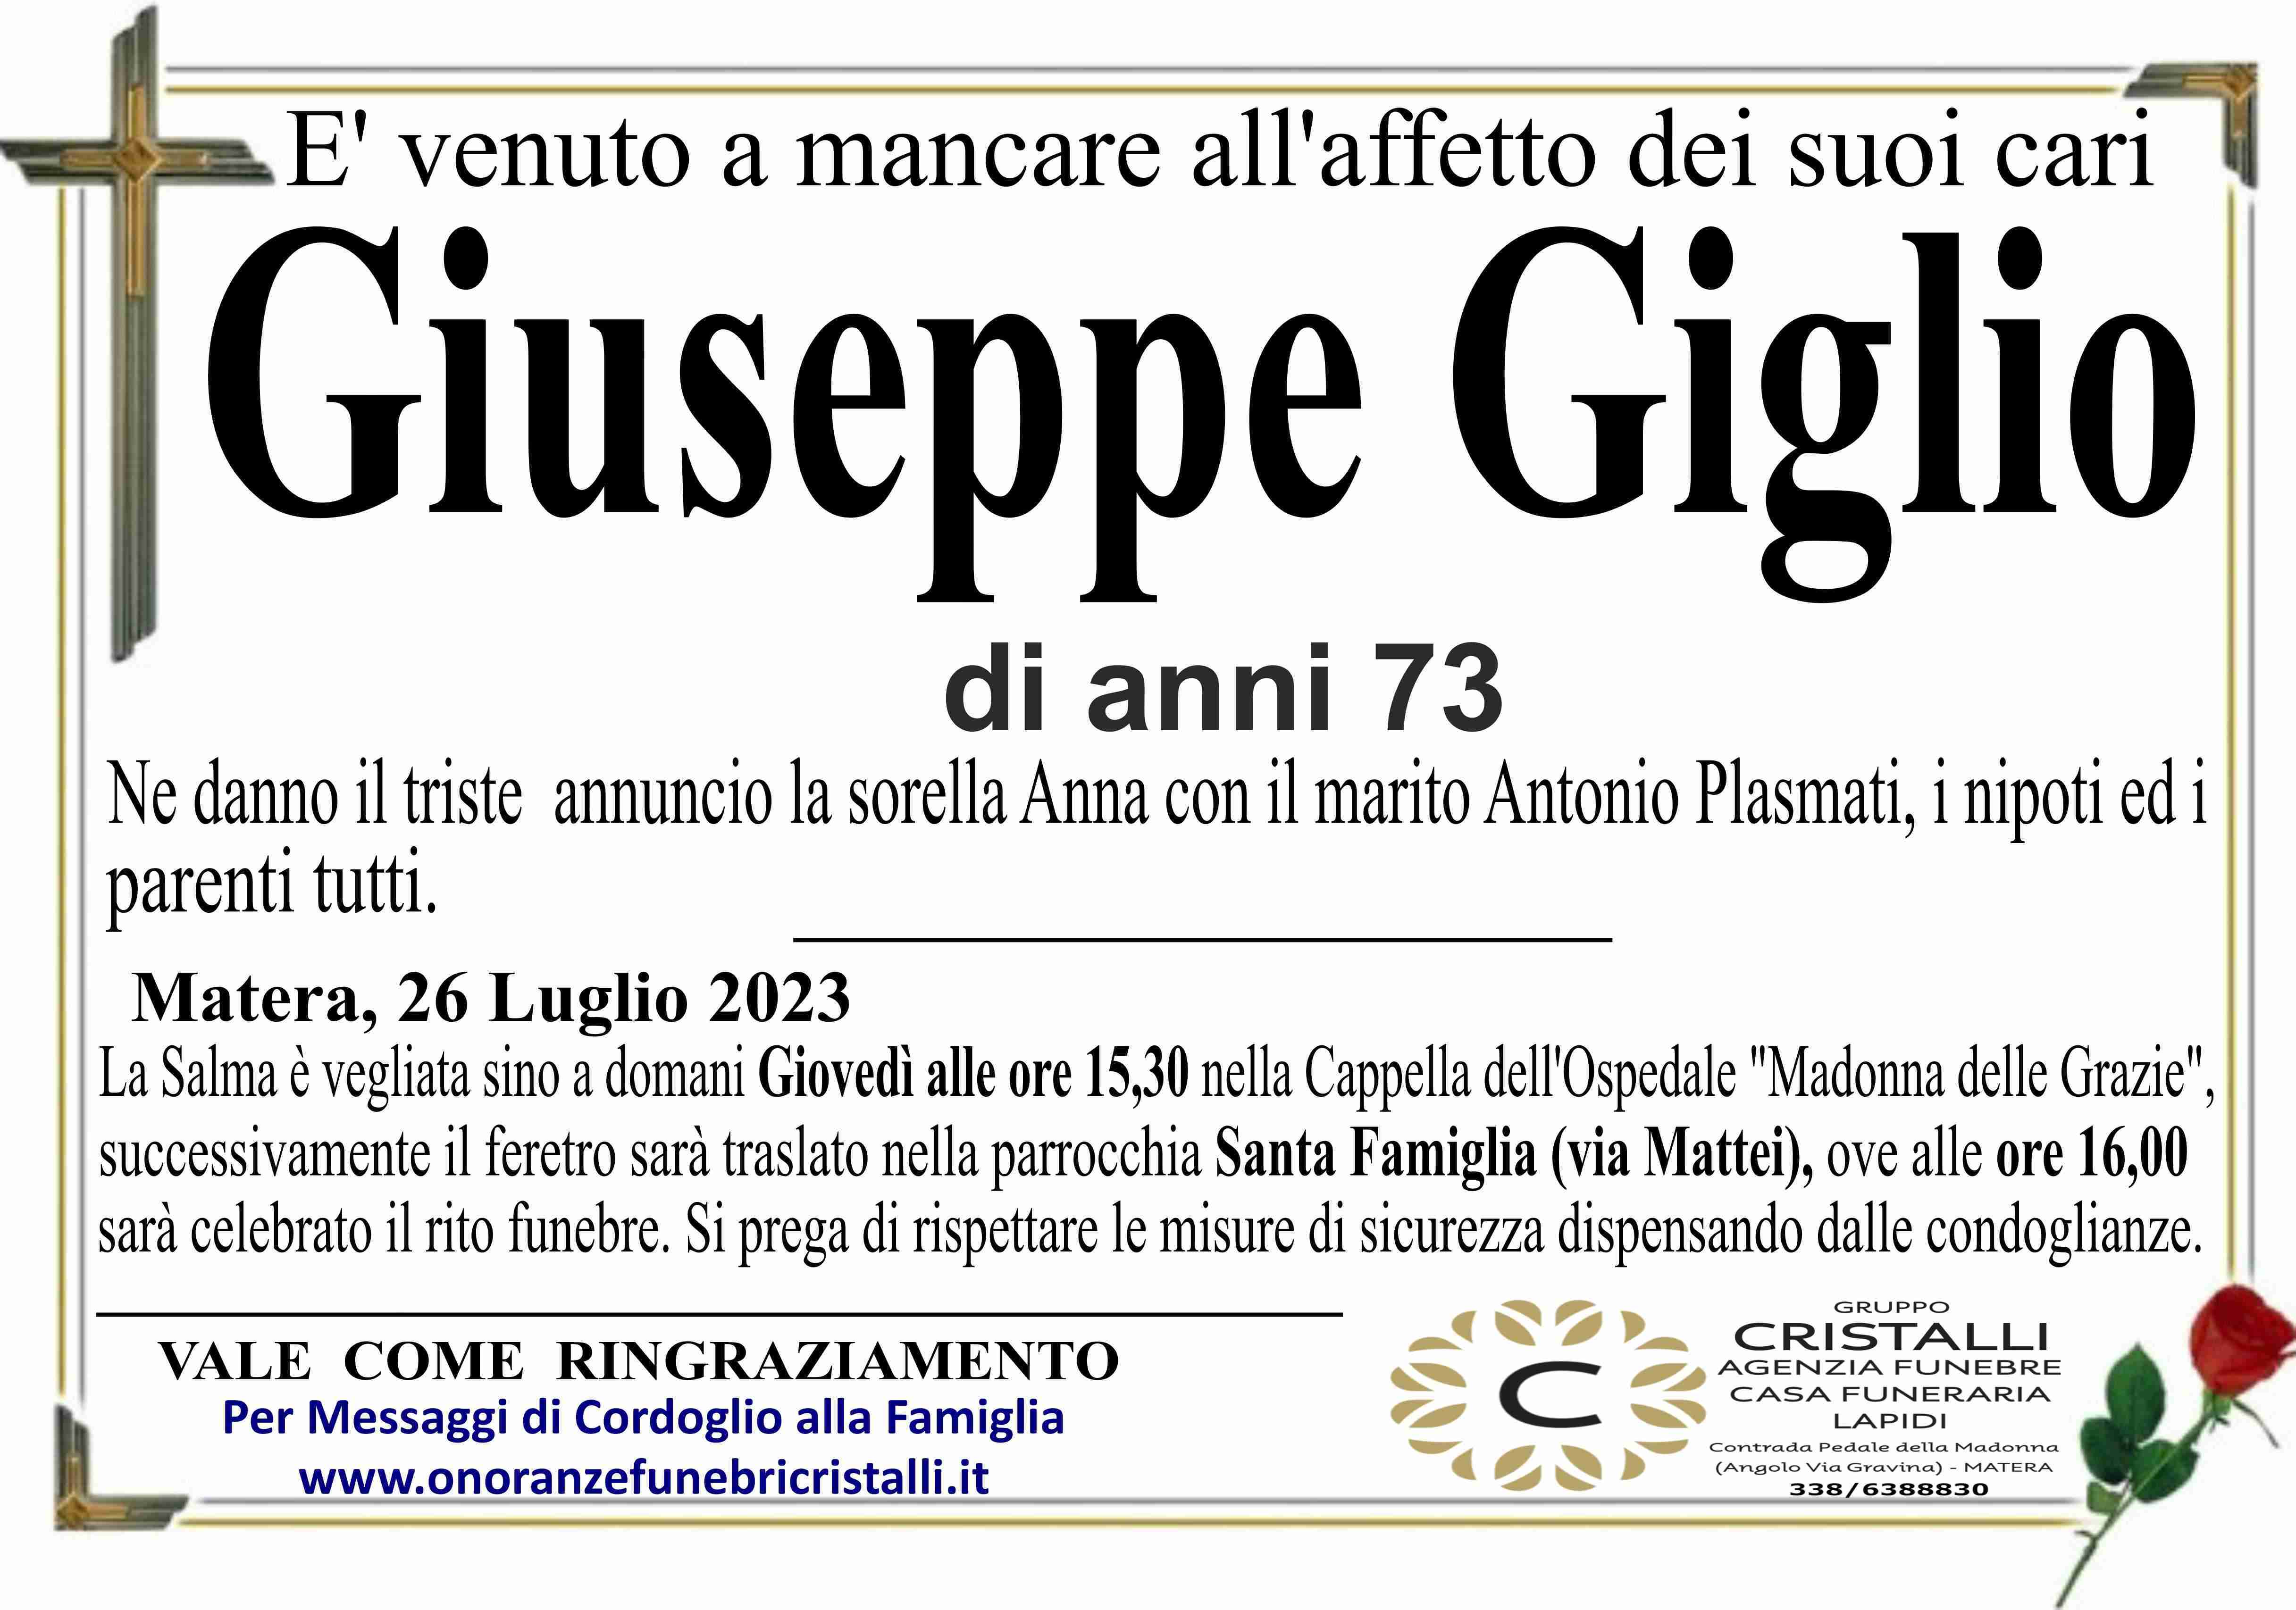 Giuseppe Giglio